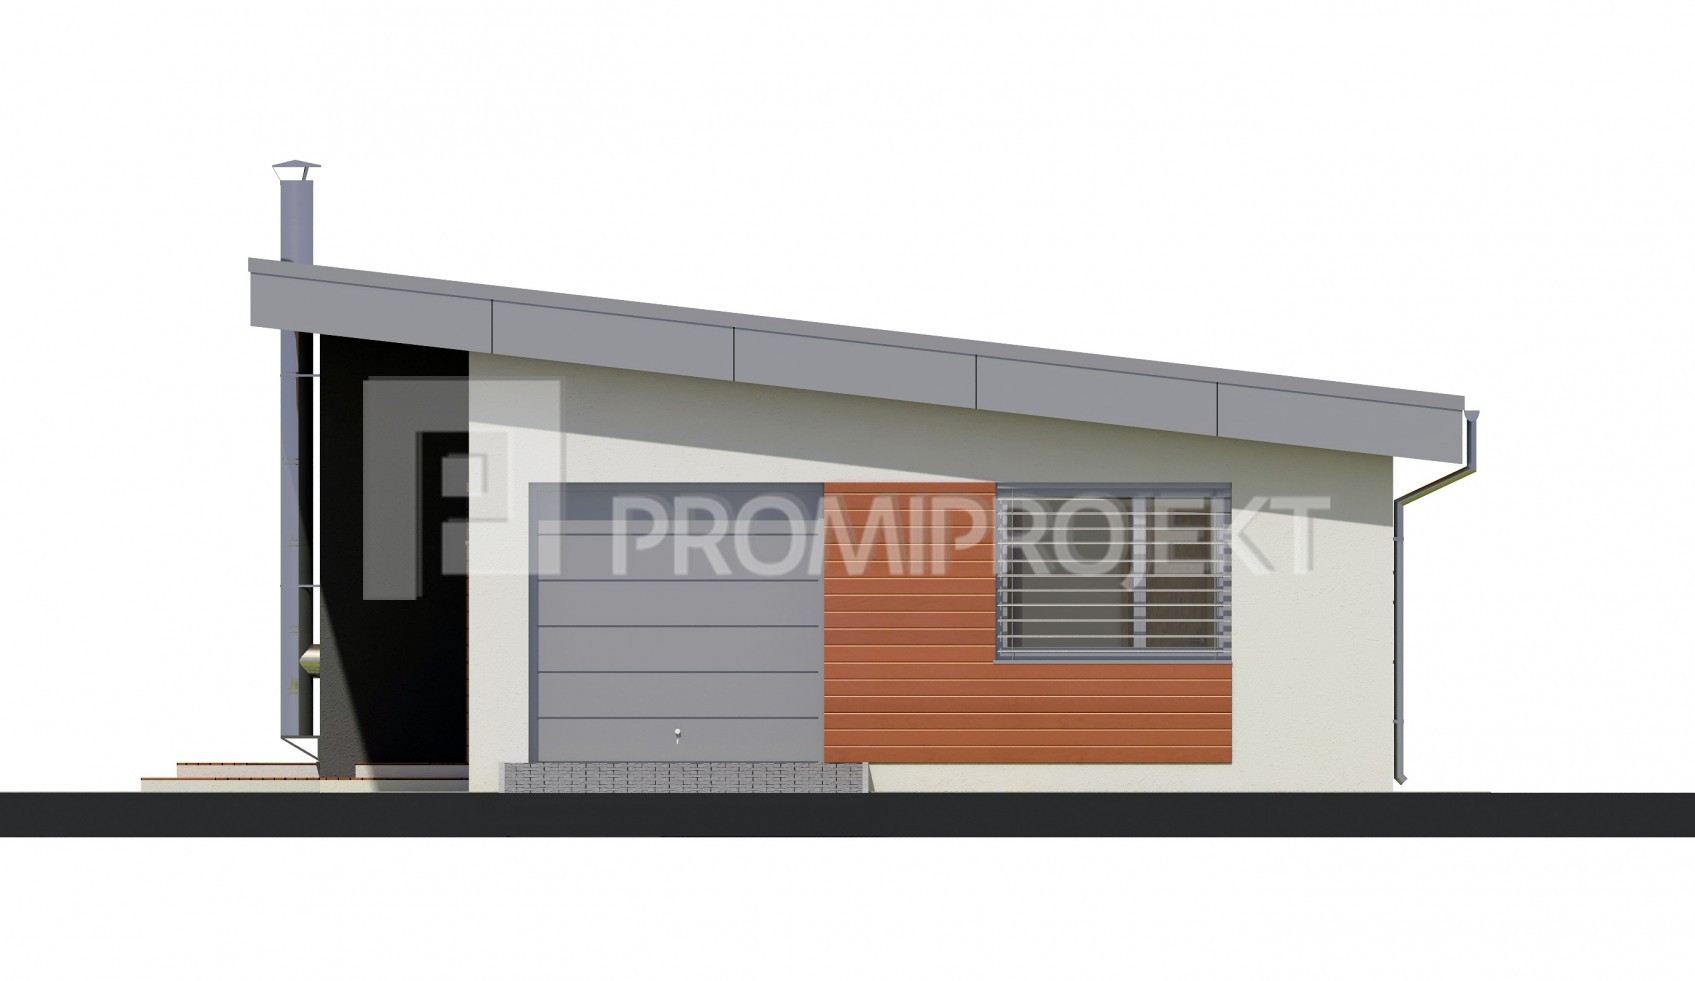 Katalógový projekt bungalov Laguna 17, PROmiprojekt